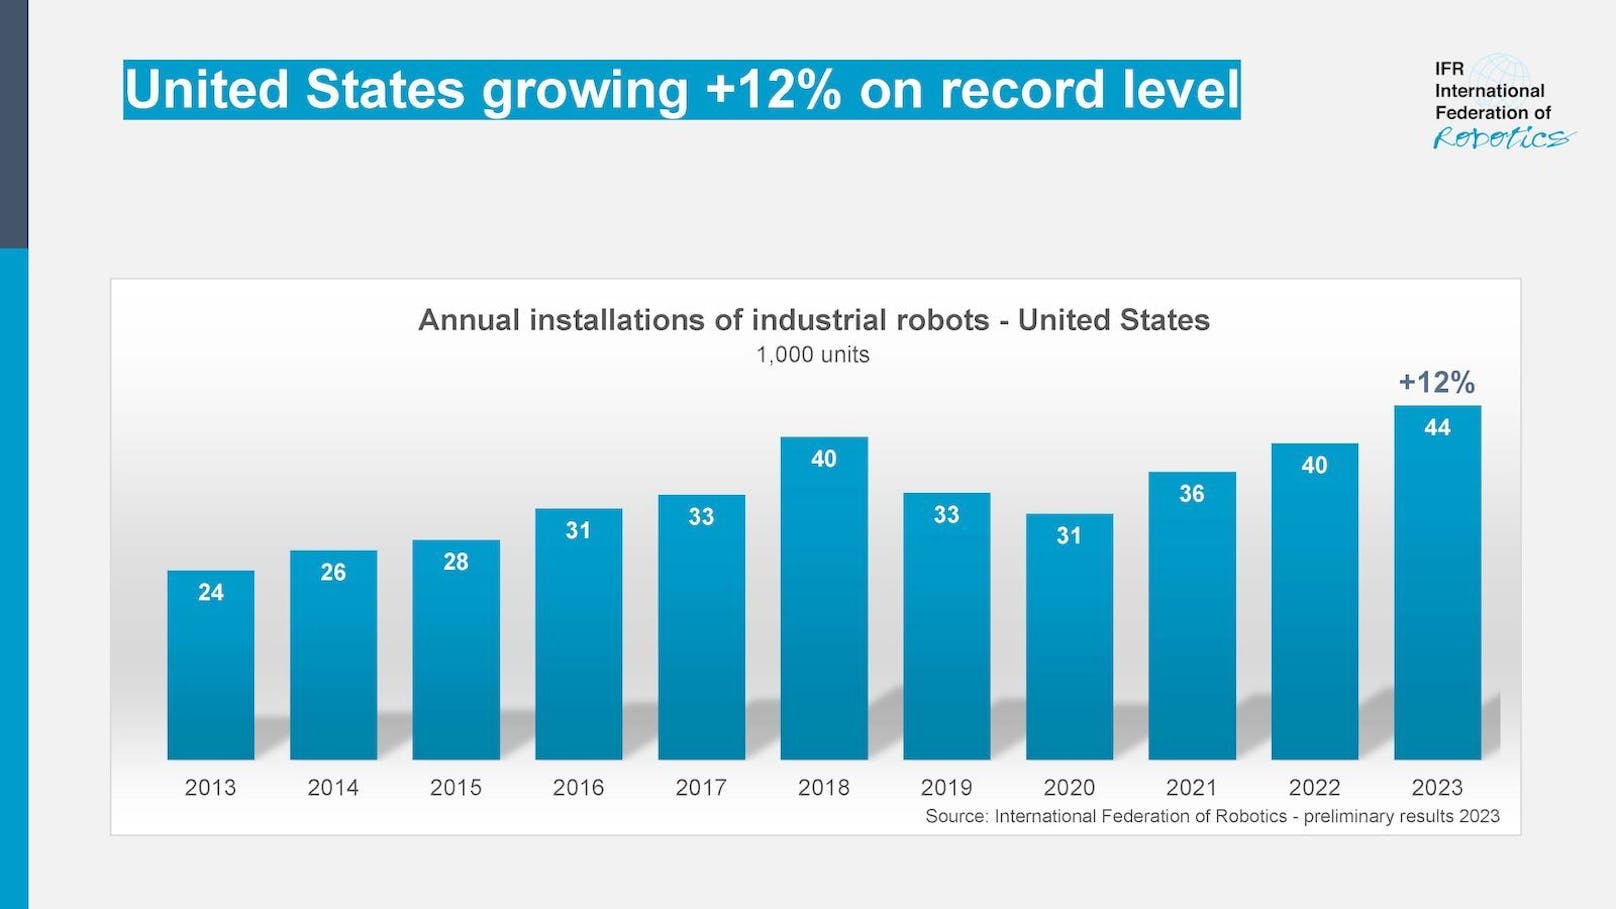 Dies sind vorläufige Ergebnisse der International Federation of Robotics (IFR).